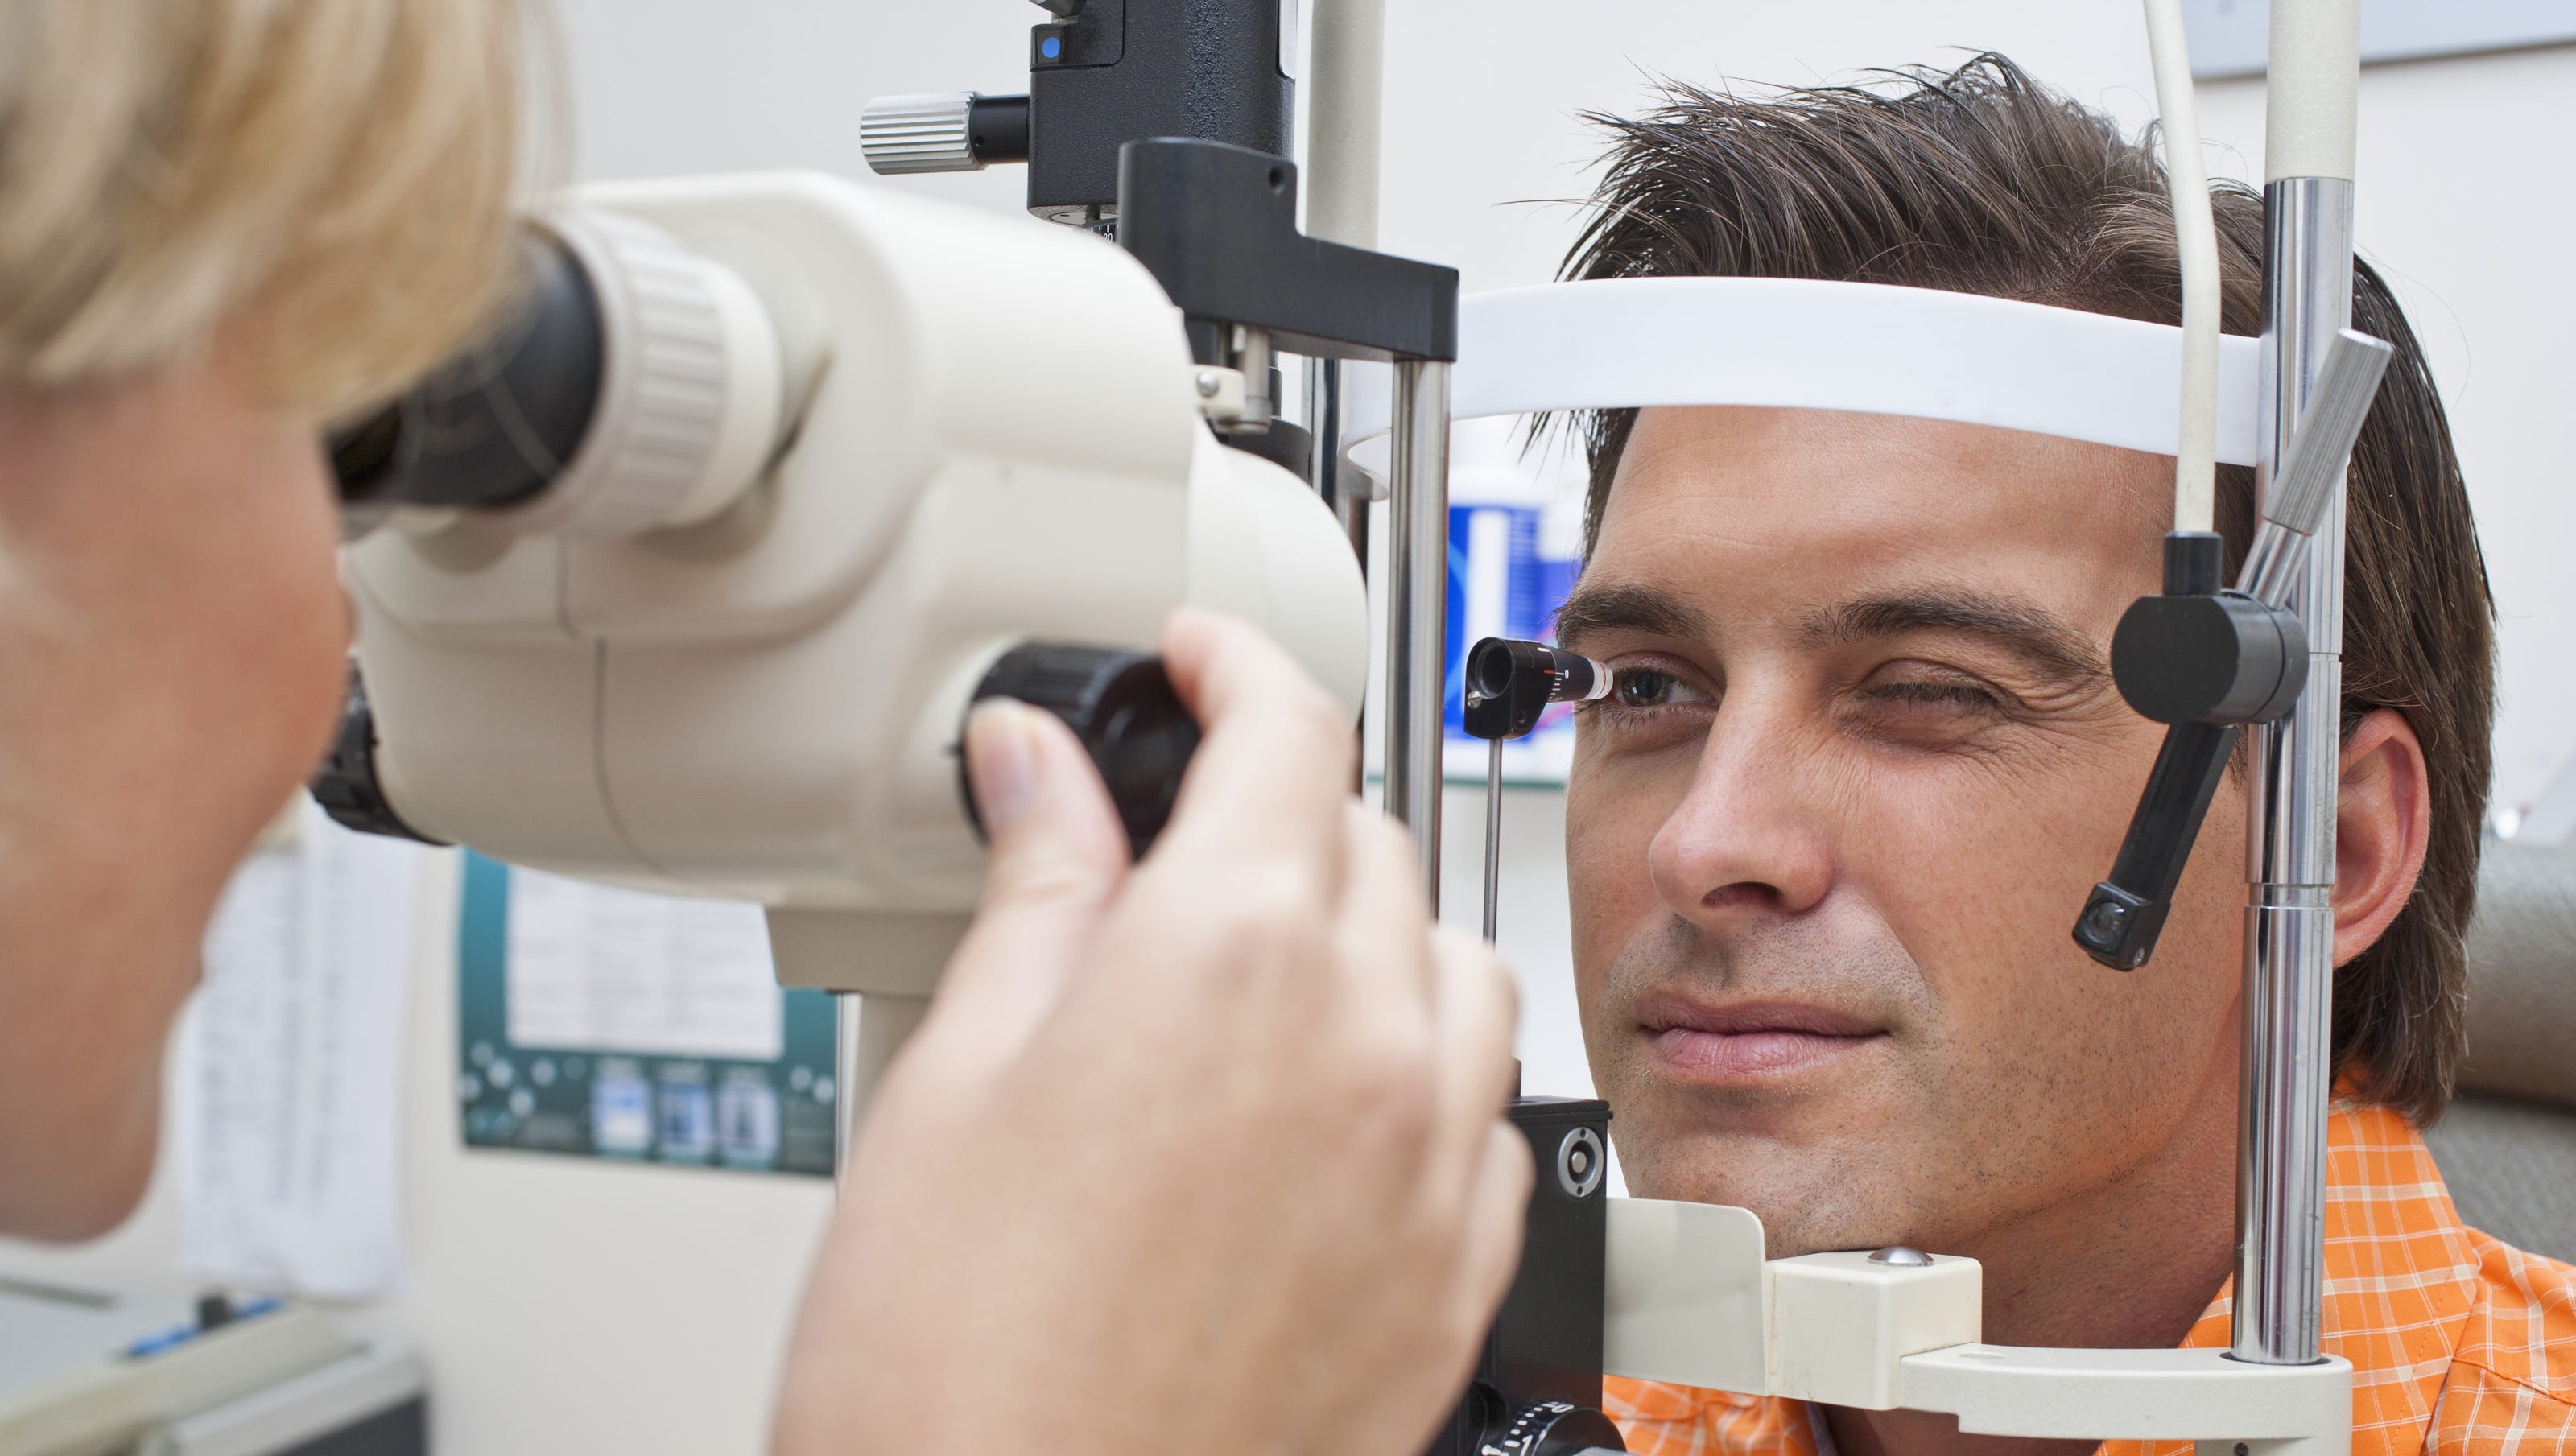 Коррекция зрения методом смайл. Обследование глаз. Лазерные технологии в офтальмологии. Офтальмология операции лазерная.